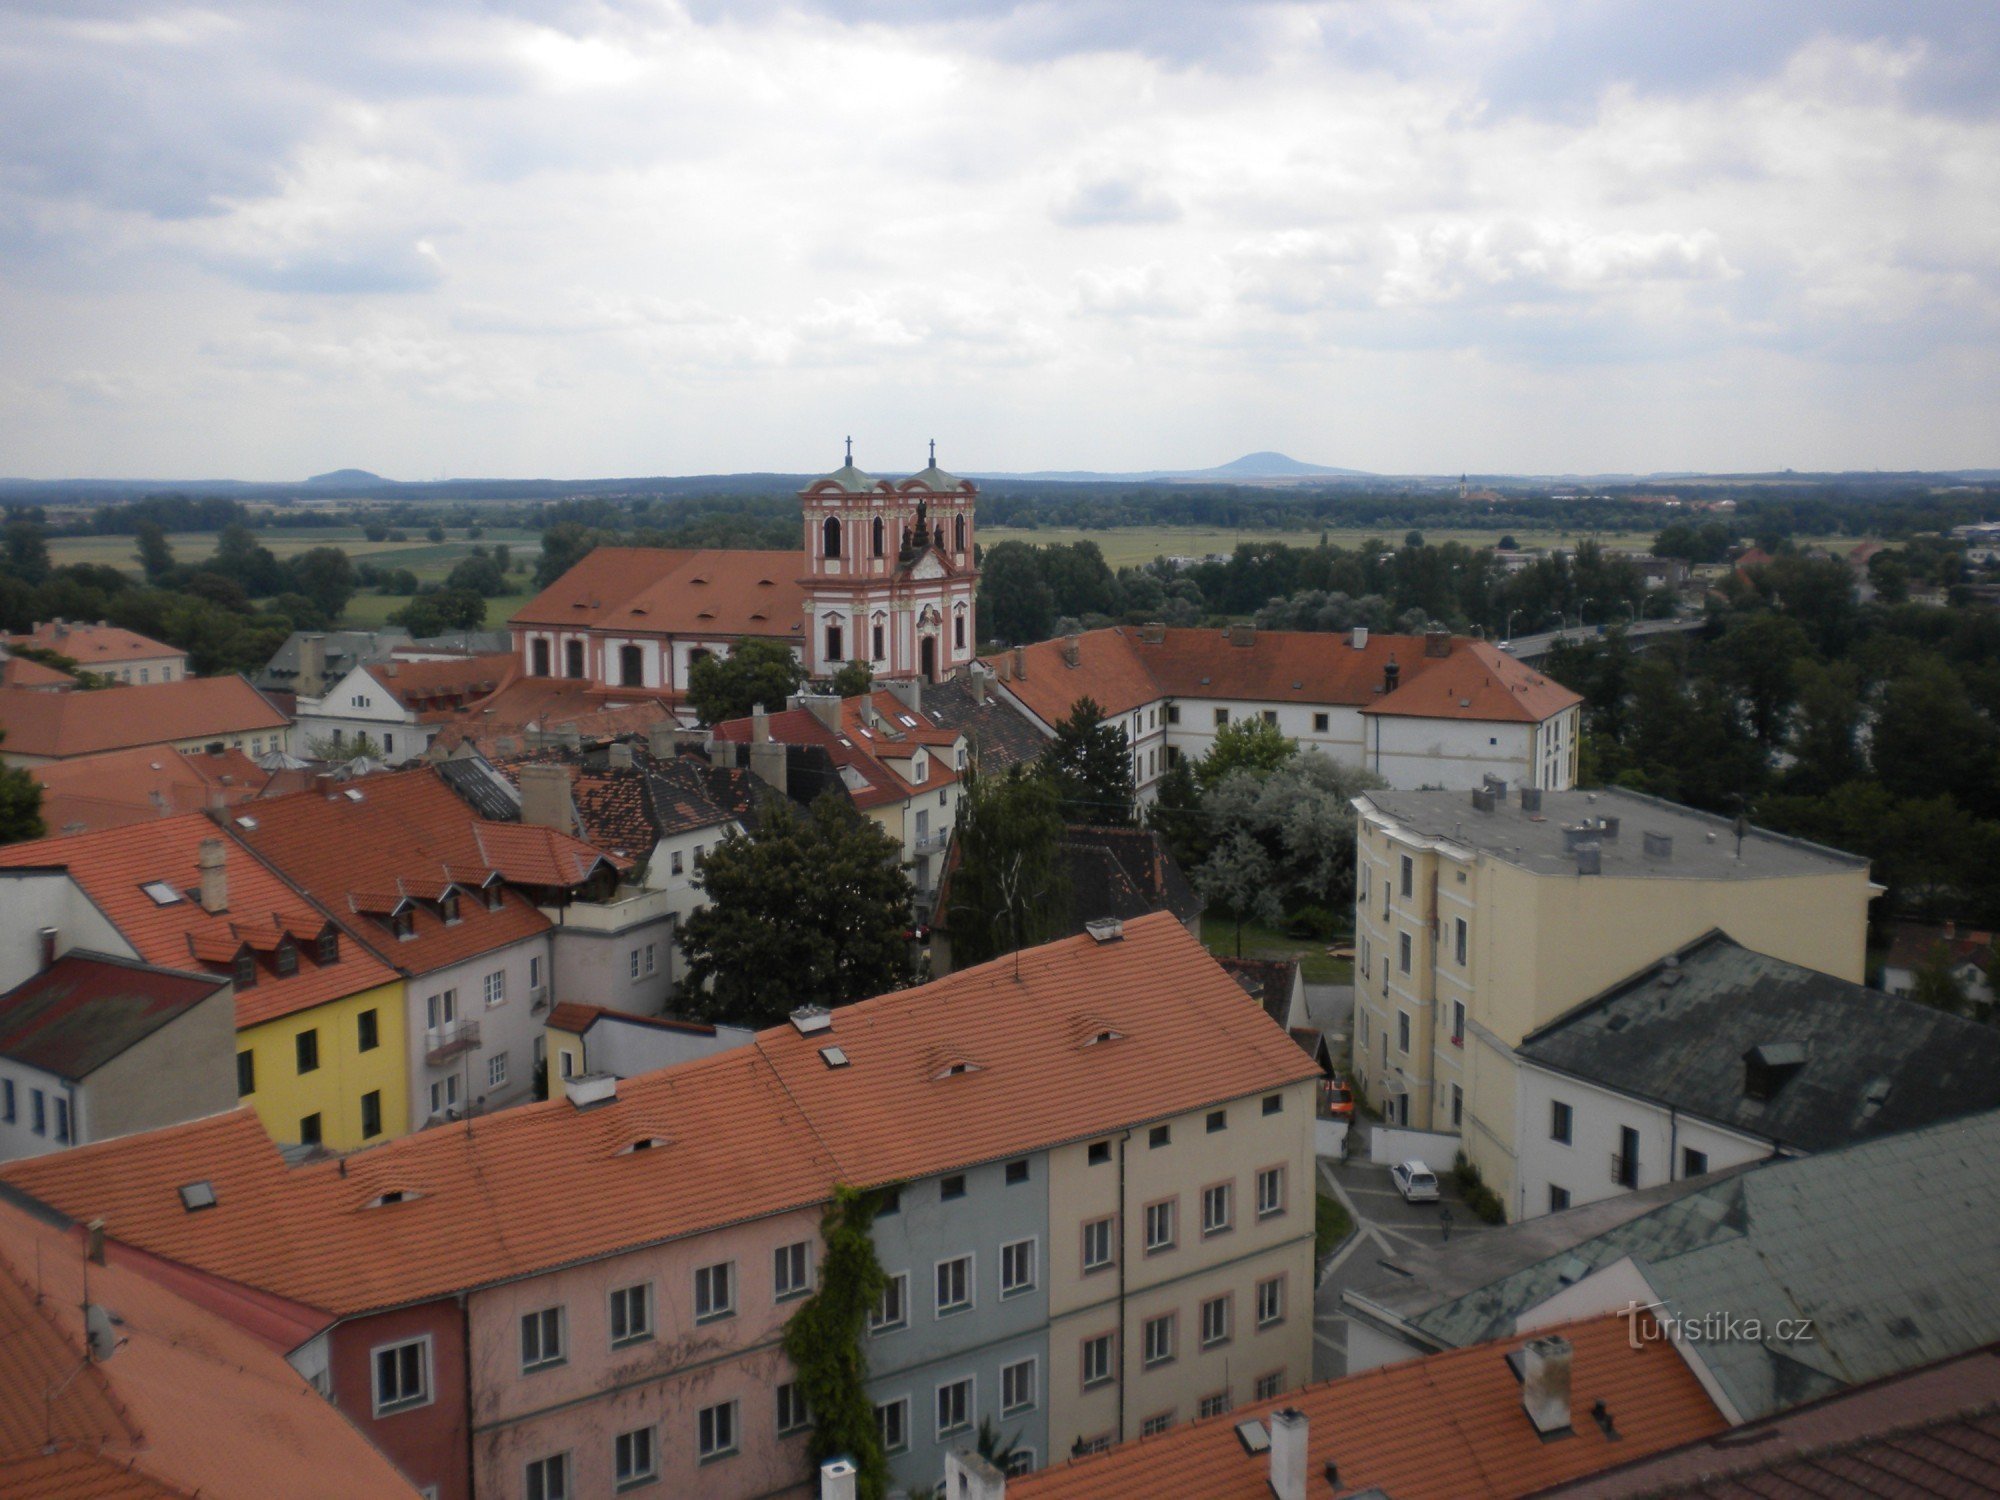 Historische gebouwen van de stad Litoměřice.